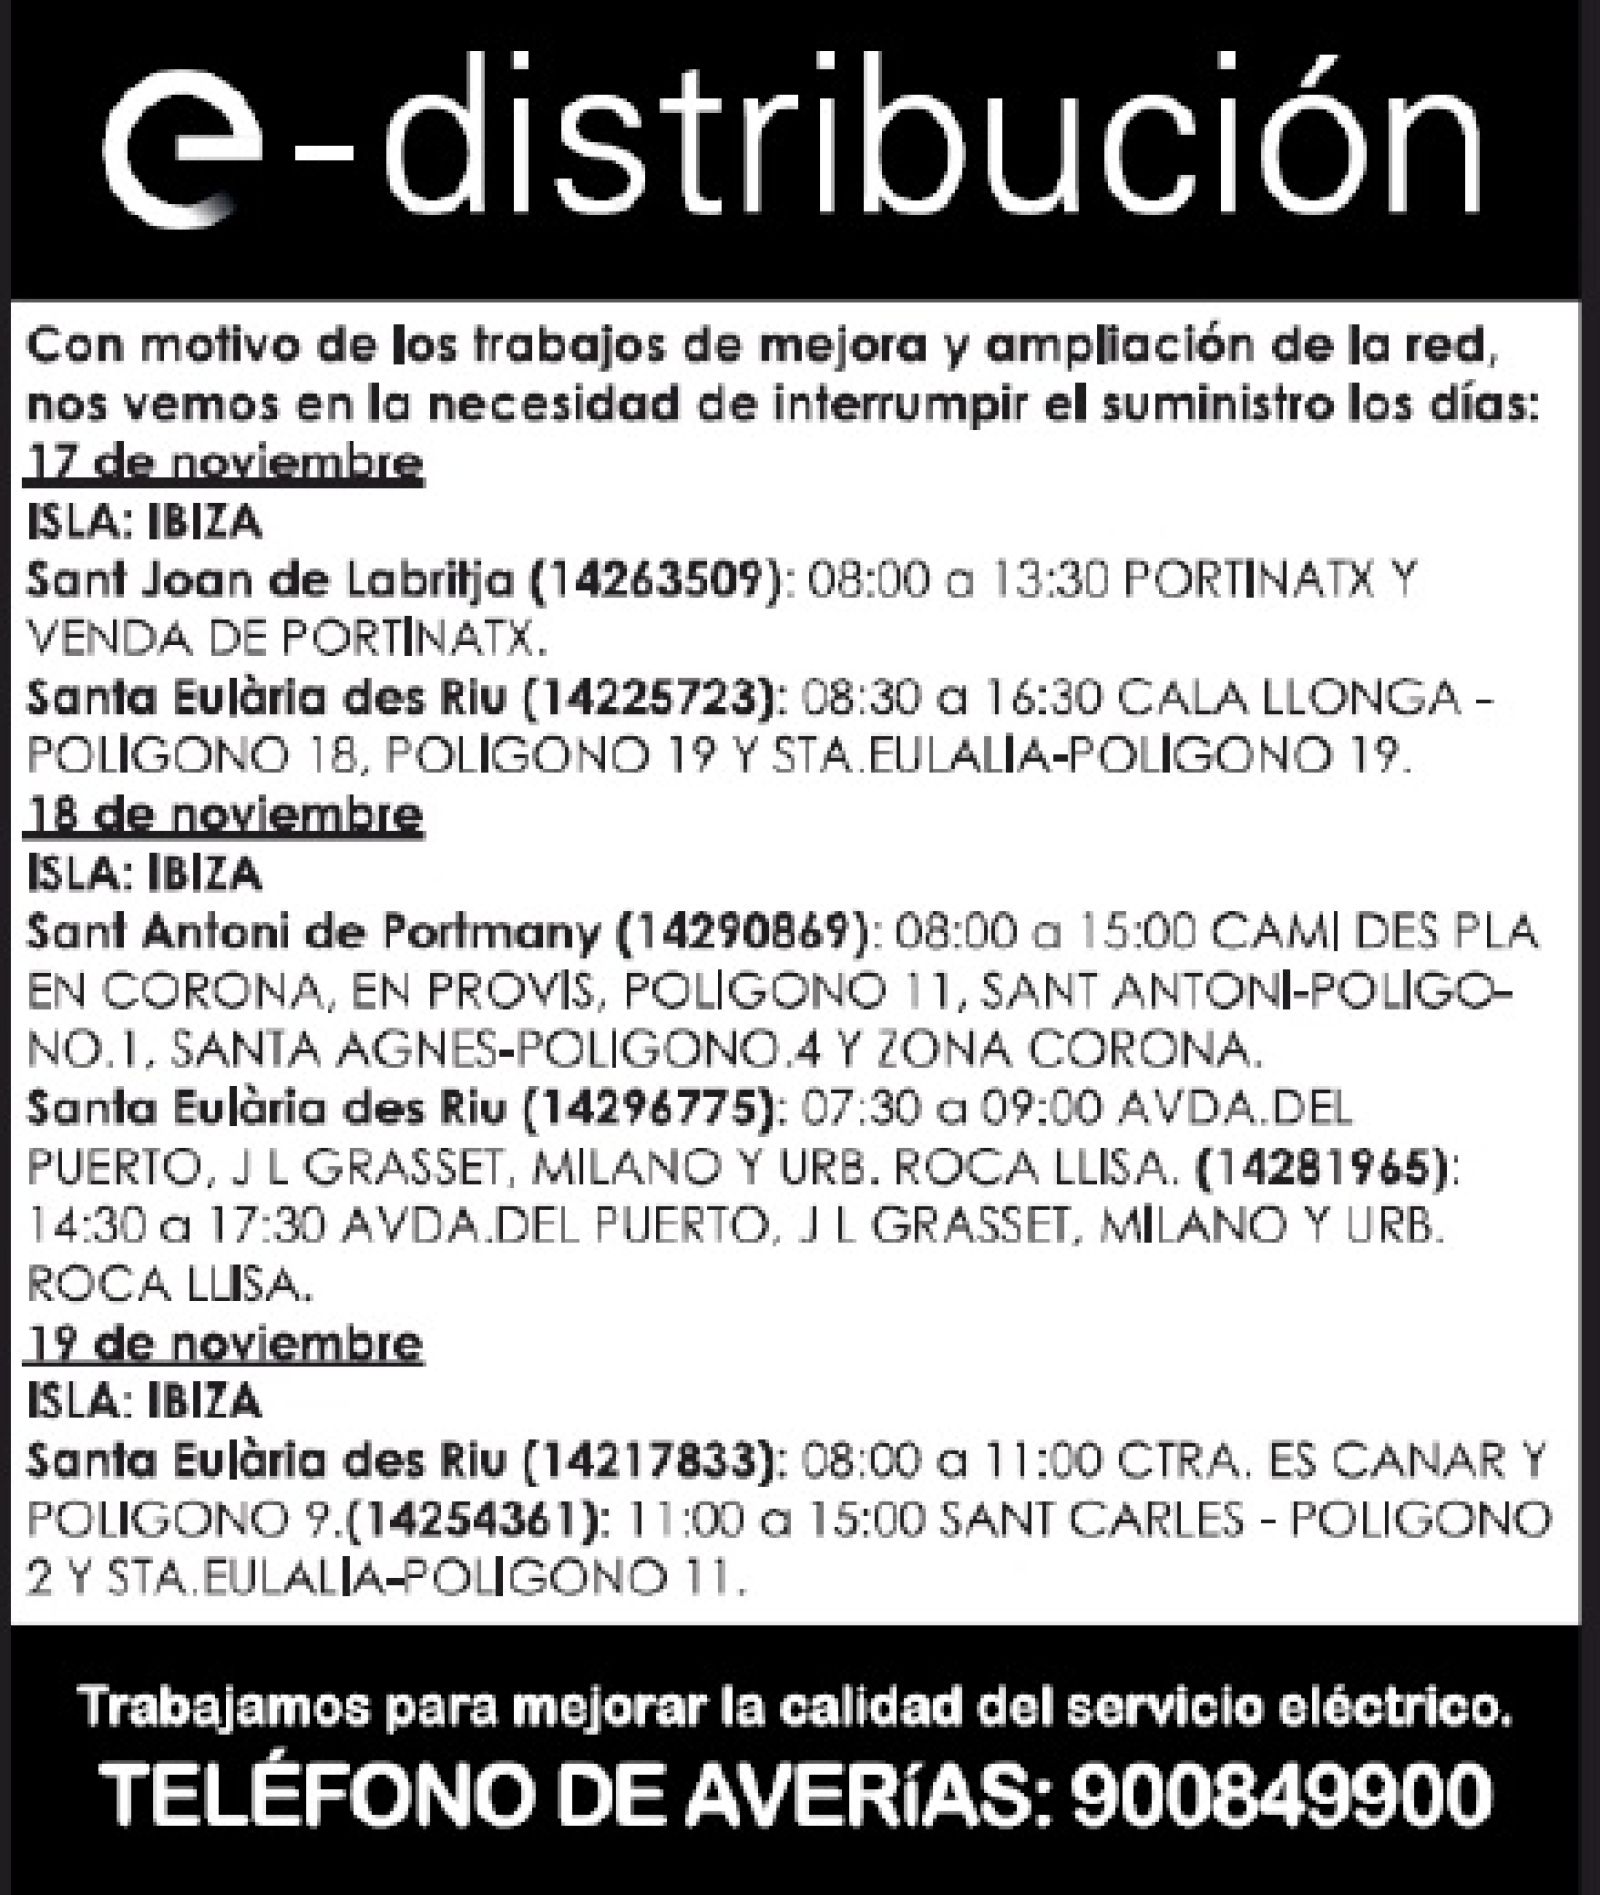 Corte temporal del suministro de energía eléctrica en diferentes zonas de Santa Eulària des Riu los días 17, 18 y 19 de noviembre